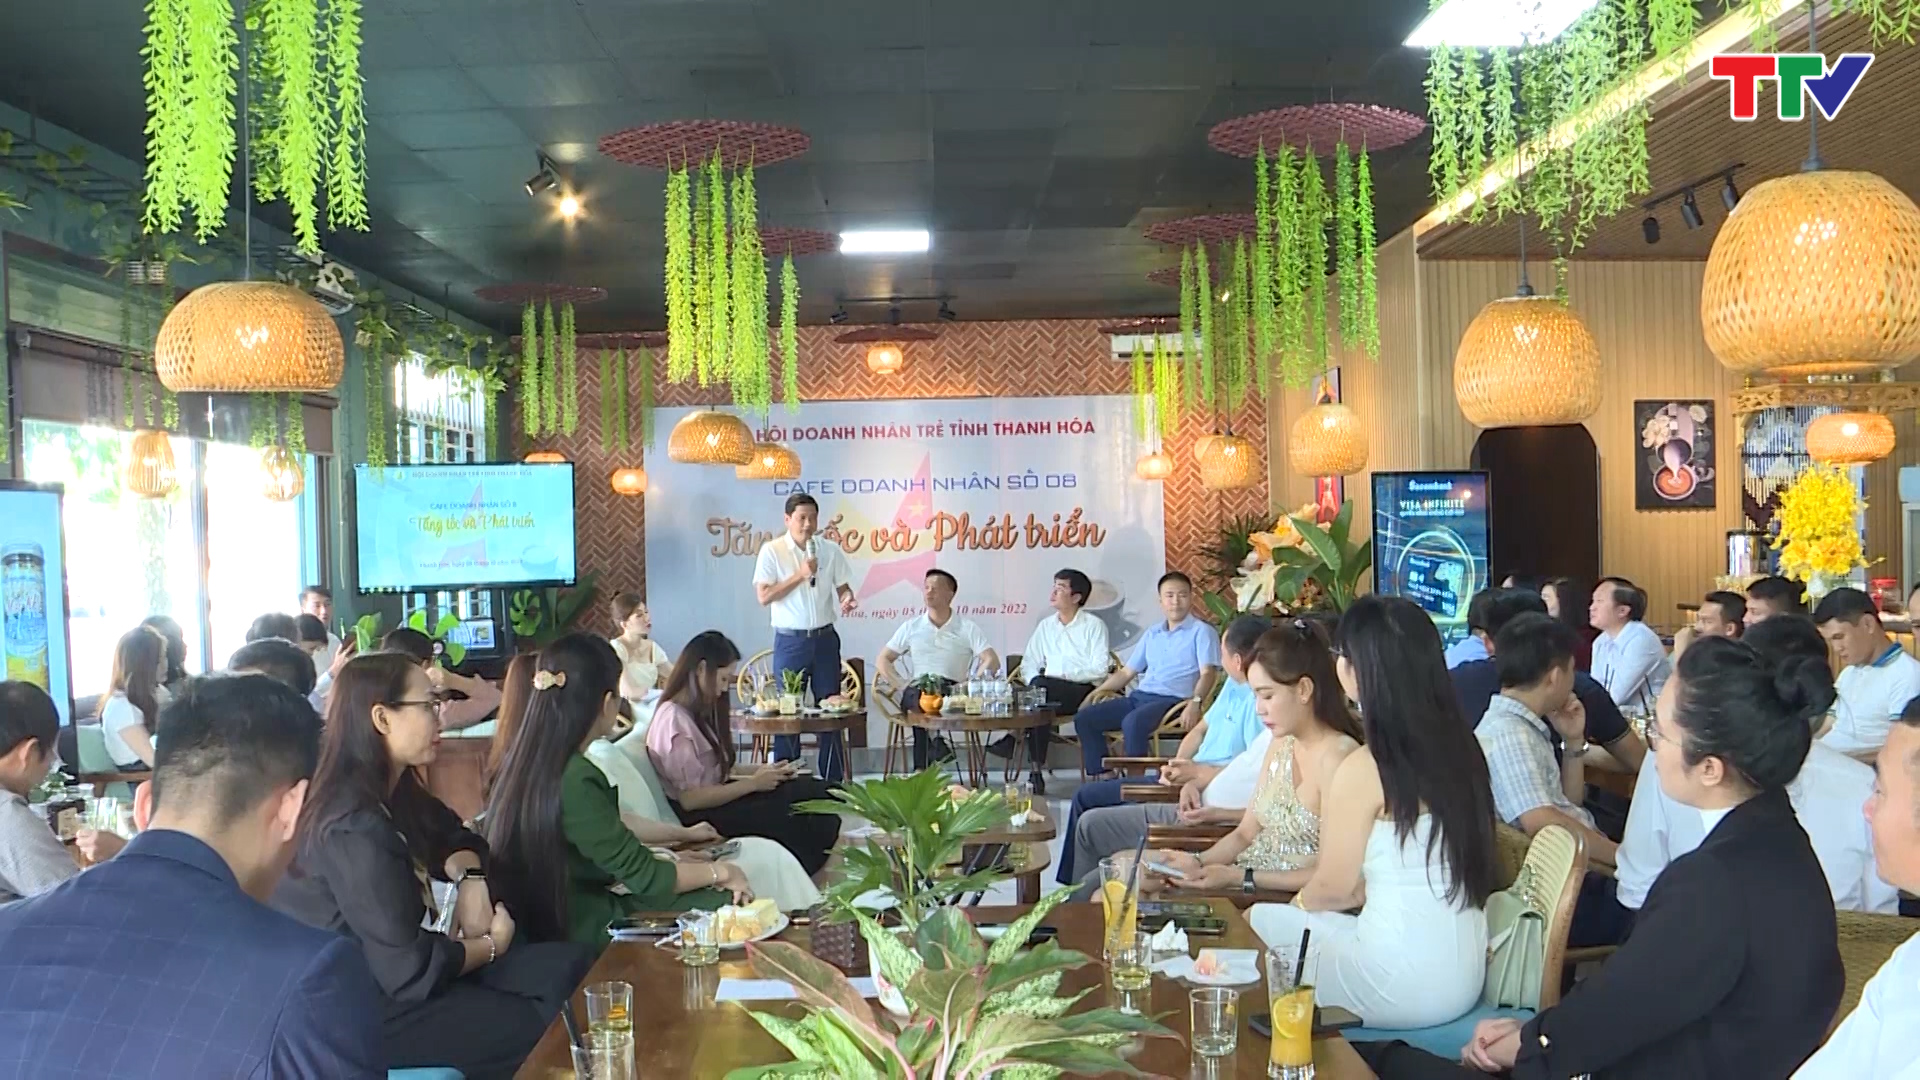 Thanh Hoá: Chương trình Cafe doanh nhân “tăng tốc và phát triển” - Ảnh 1.